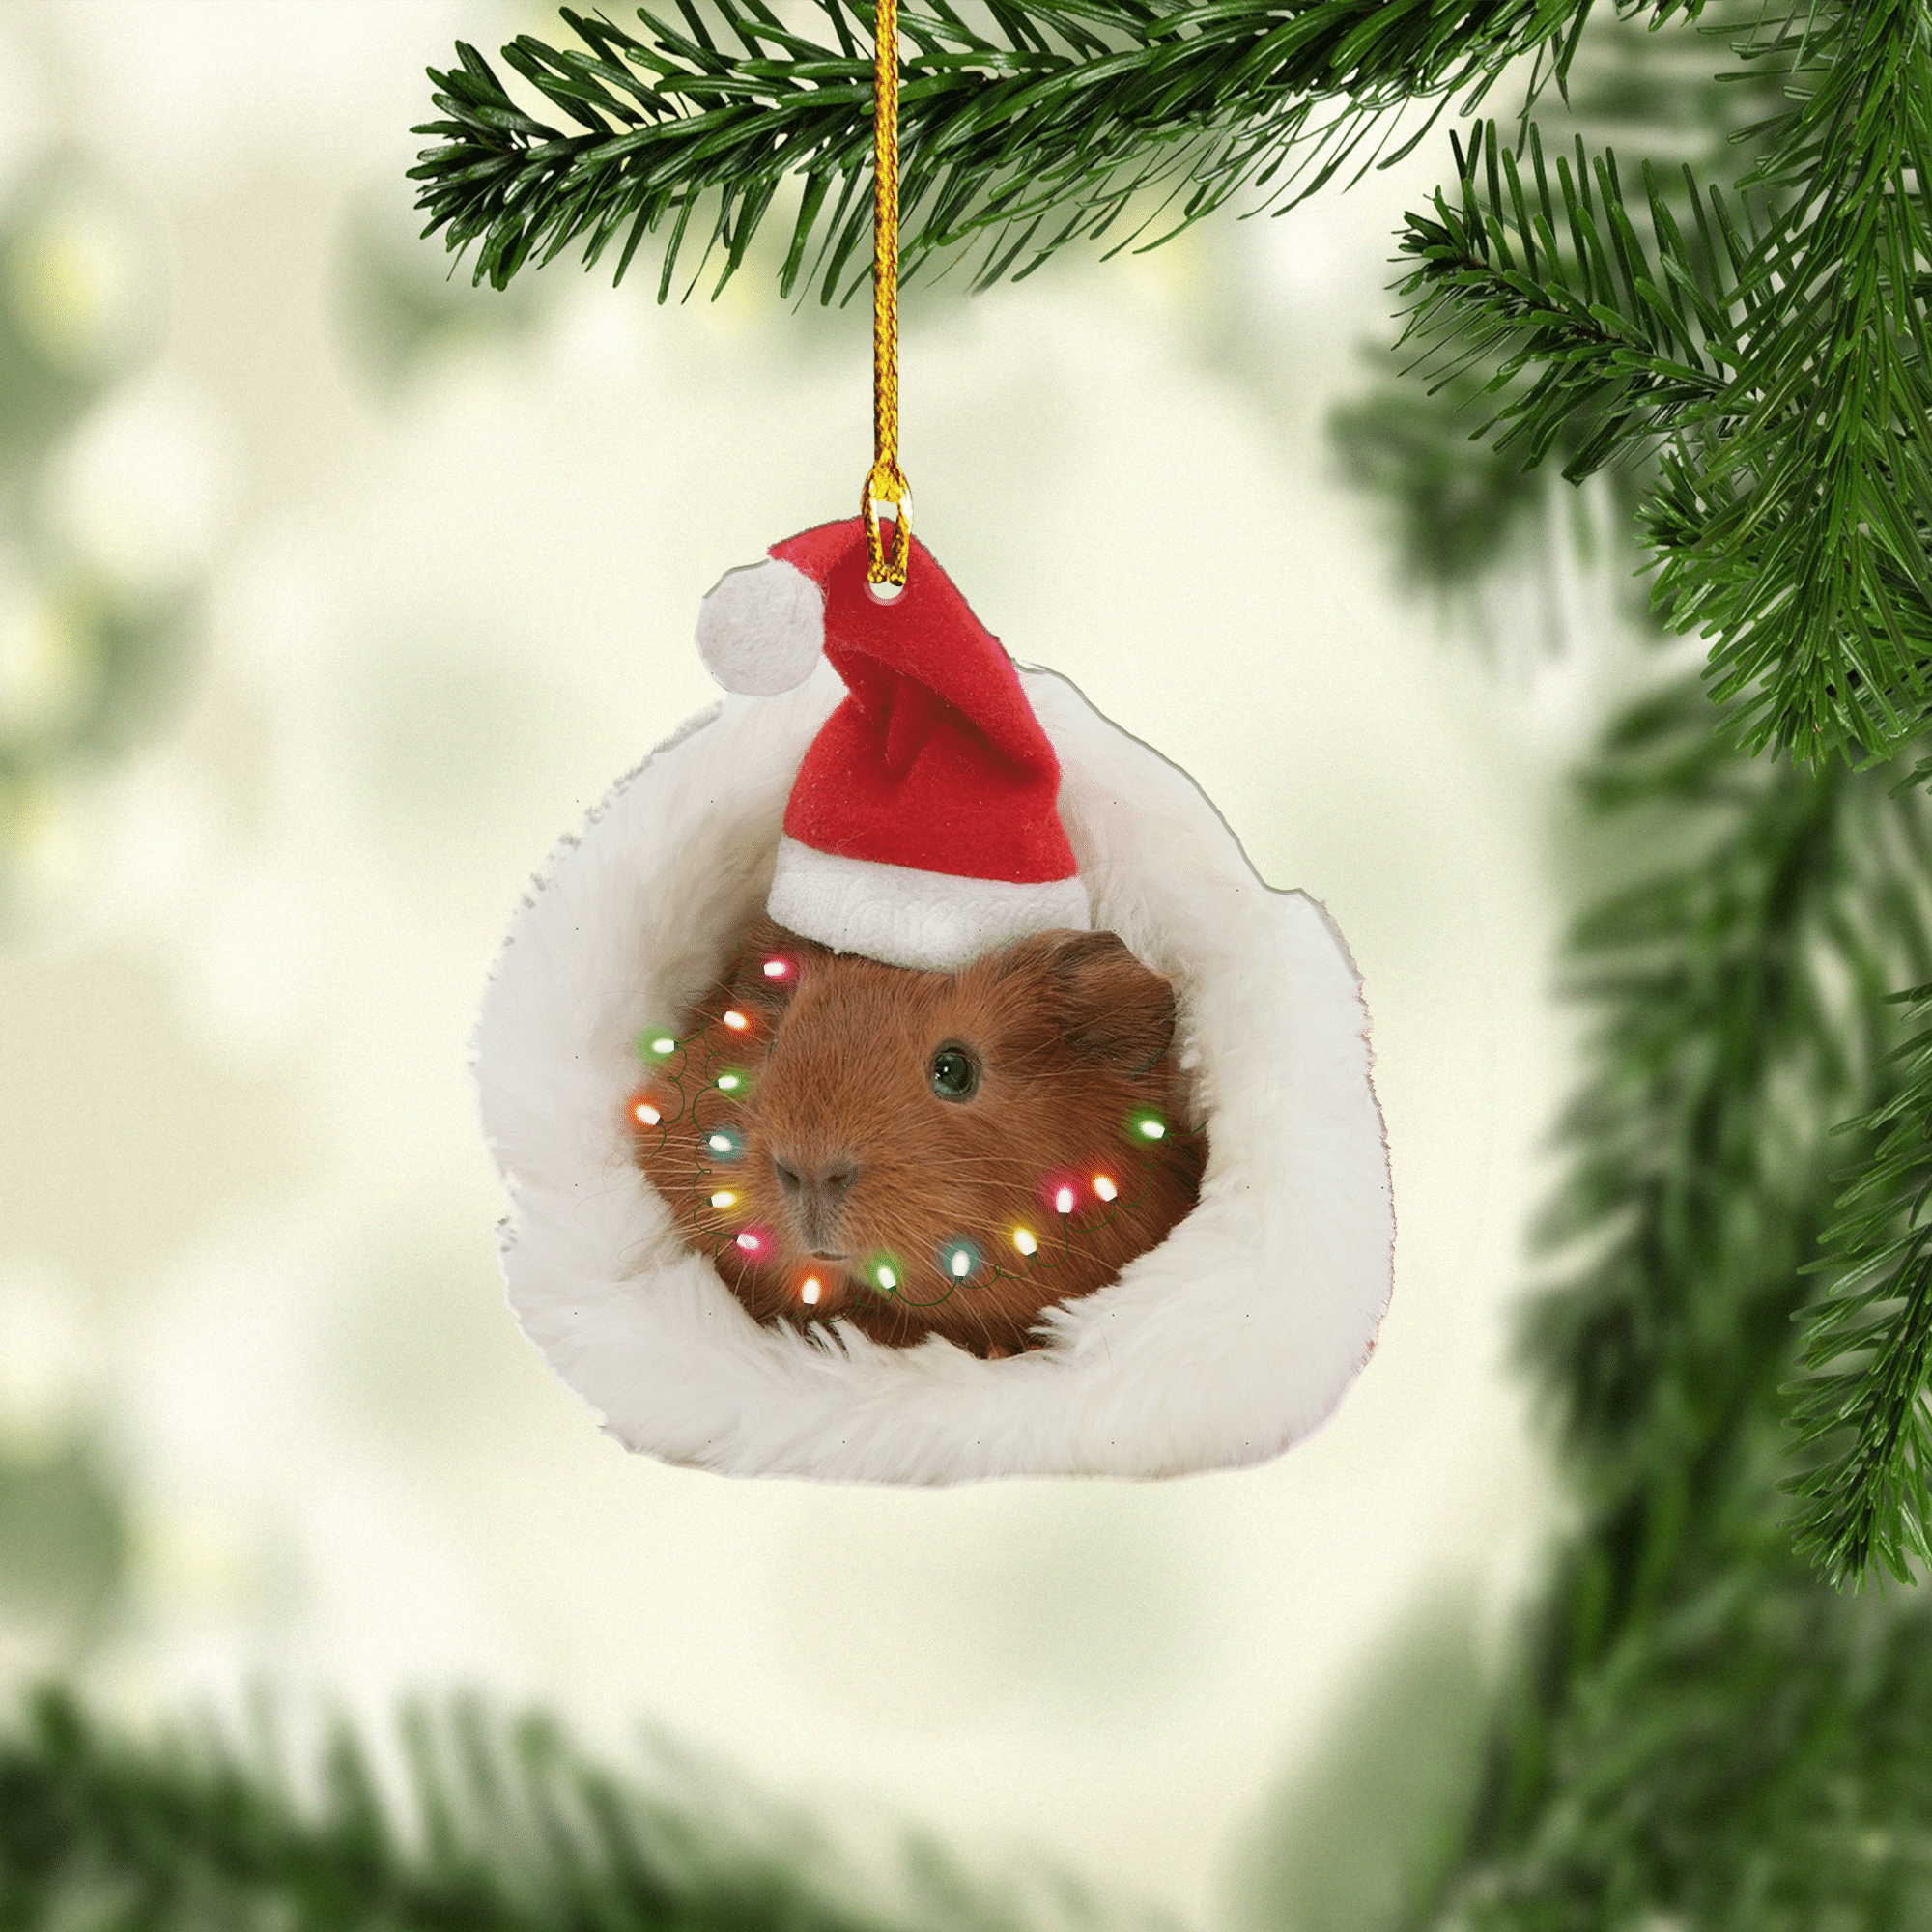 Guinea Pig Christmas Ornament/ Custom Name Ornament/ Christmas Ornament Gift For Guinea Pig Lovers/ Christmas Dog Friends Hanging Ornament